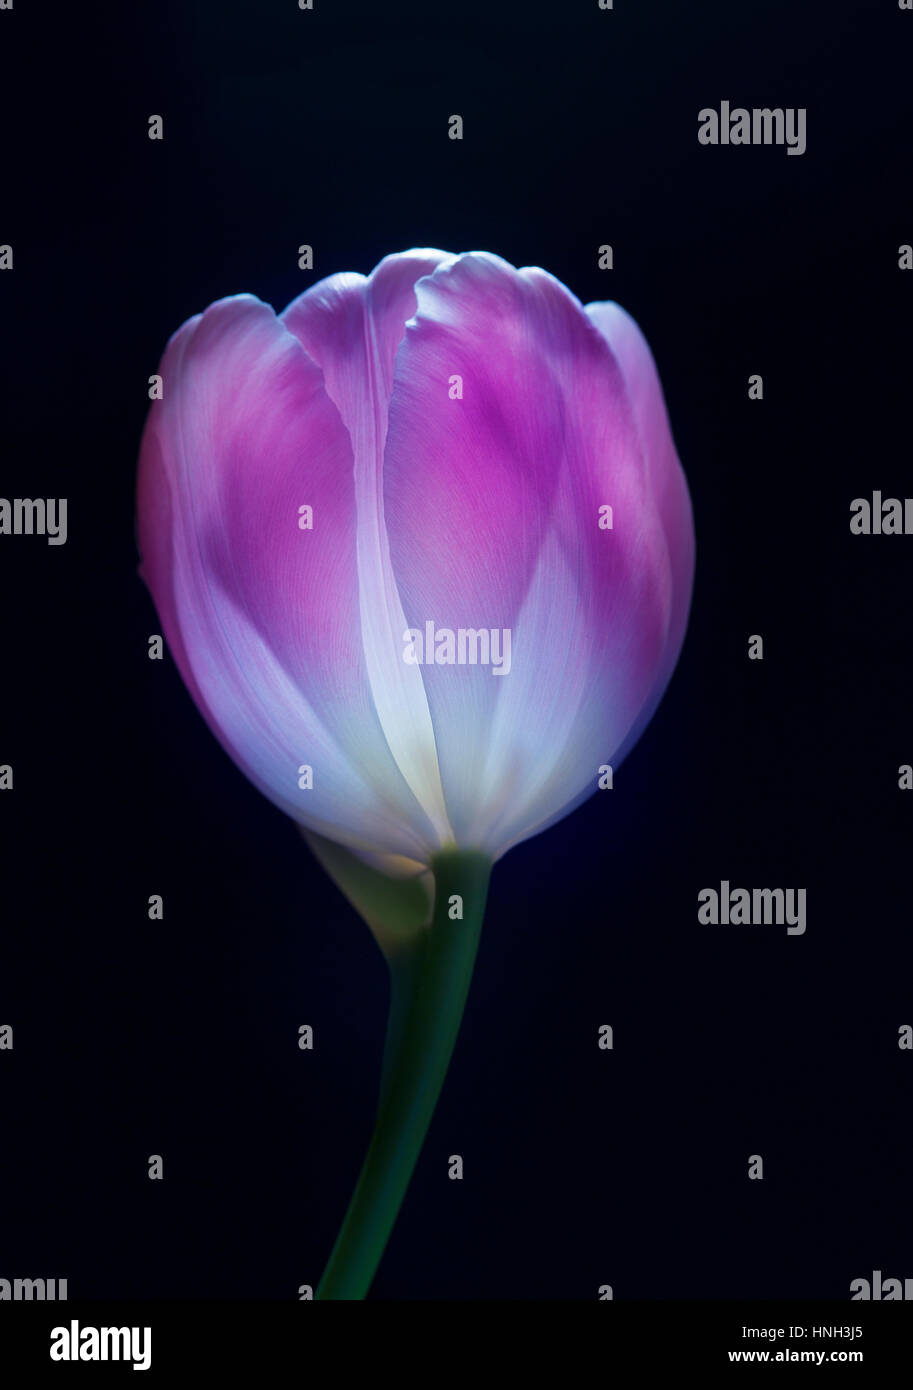 Tulip in color. Stock Photo